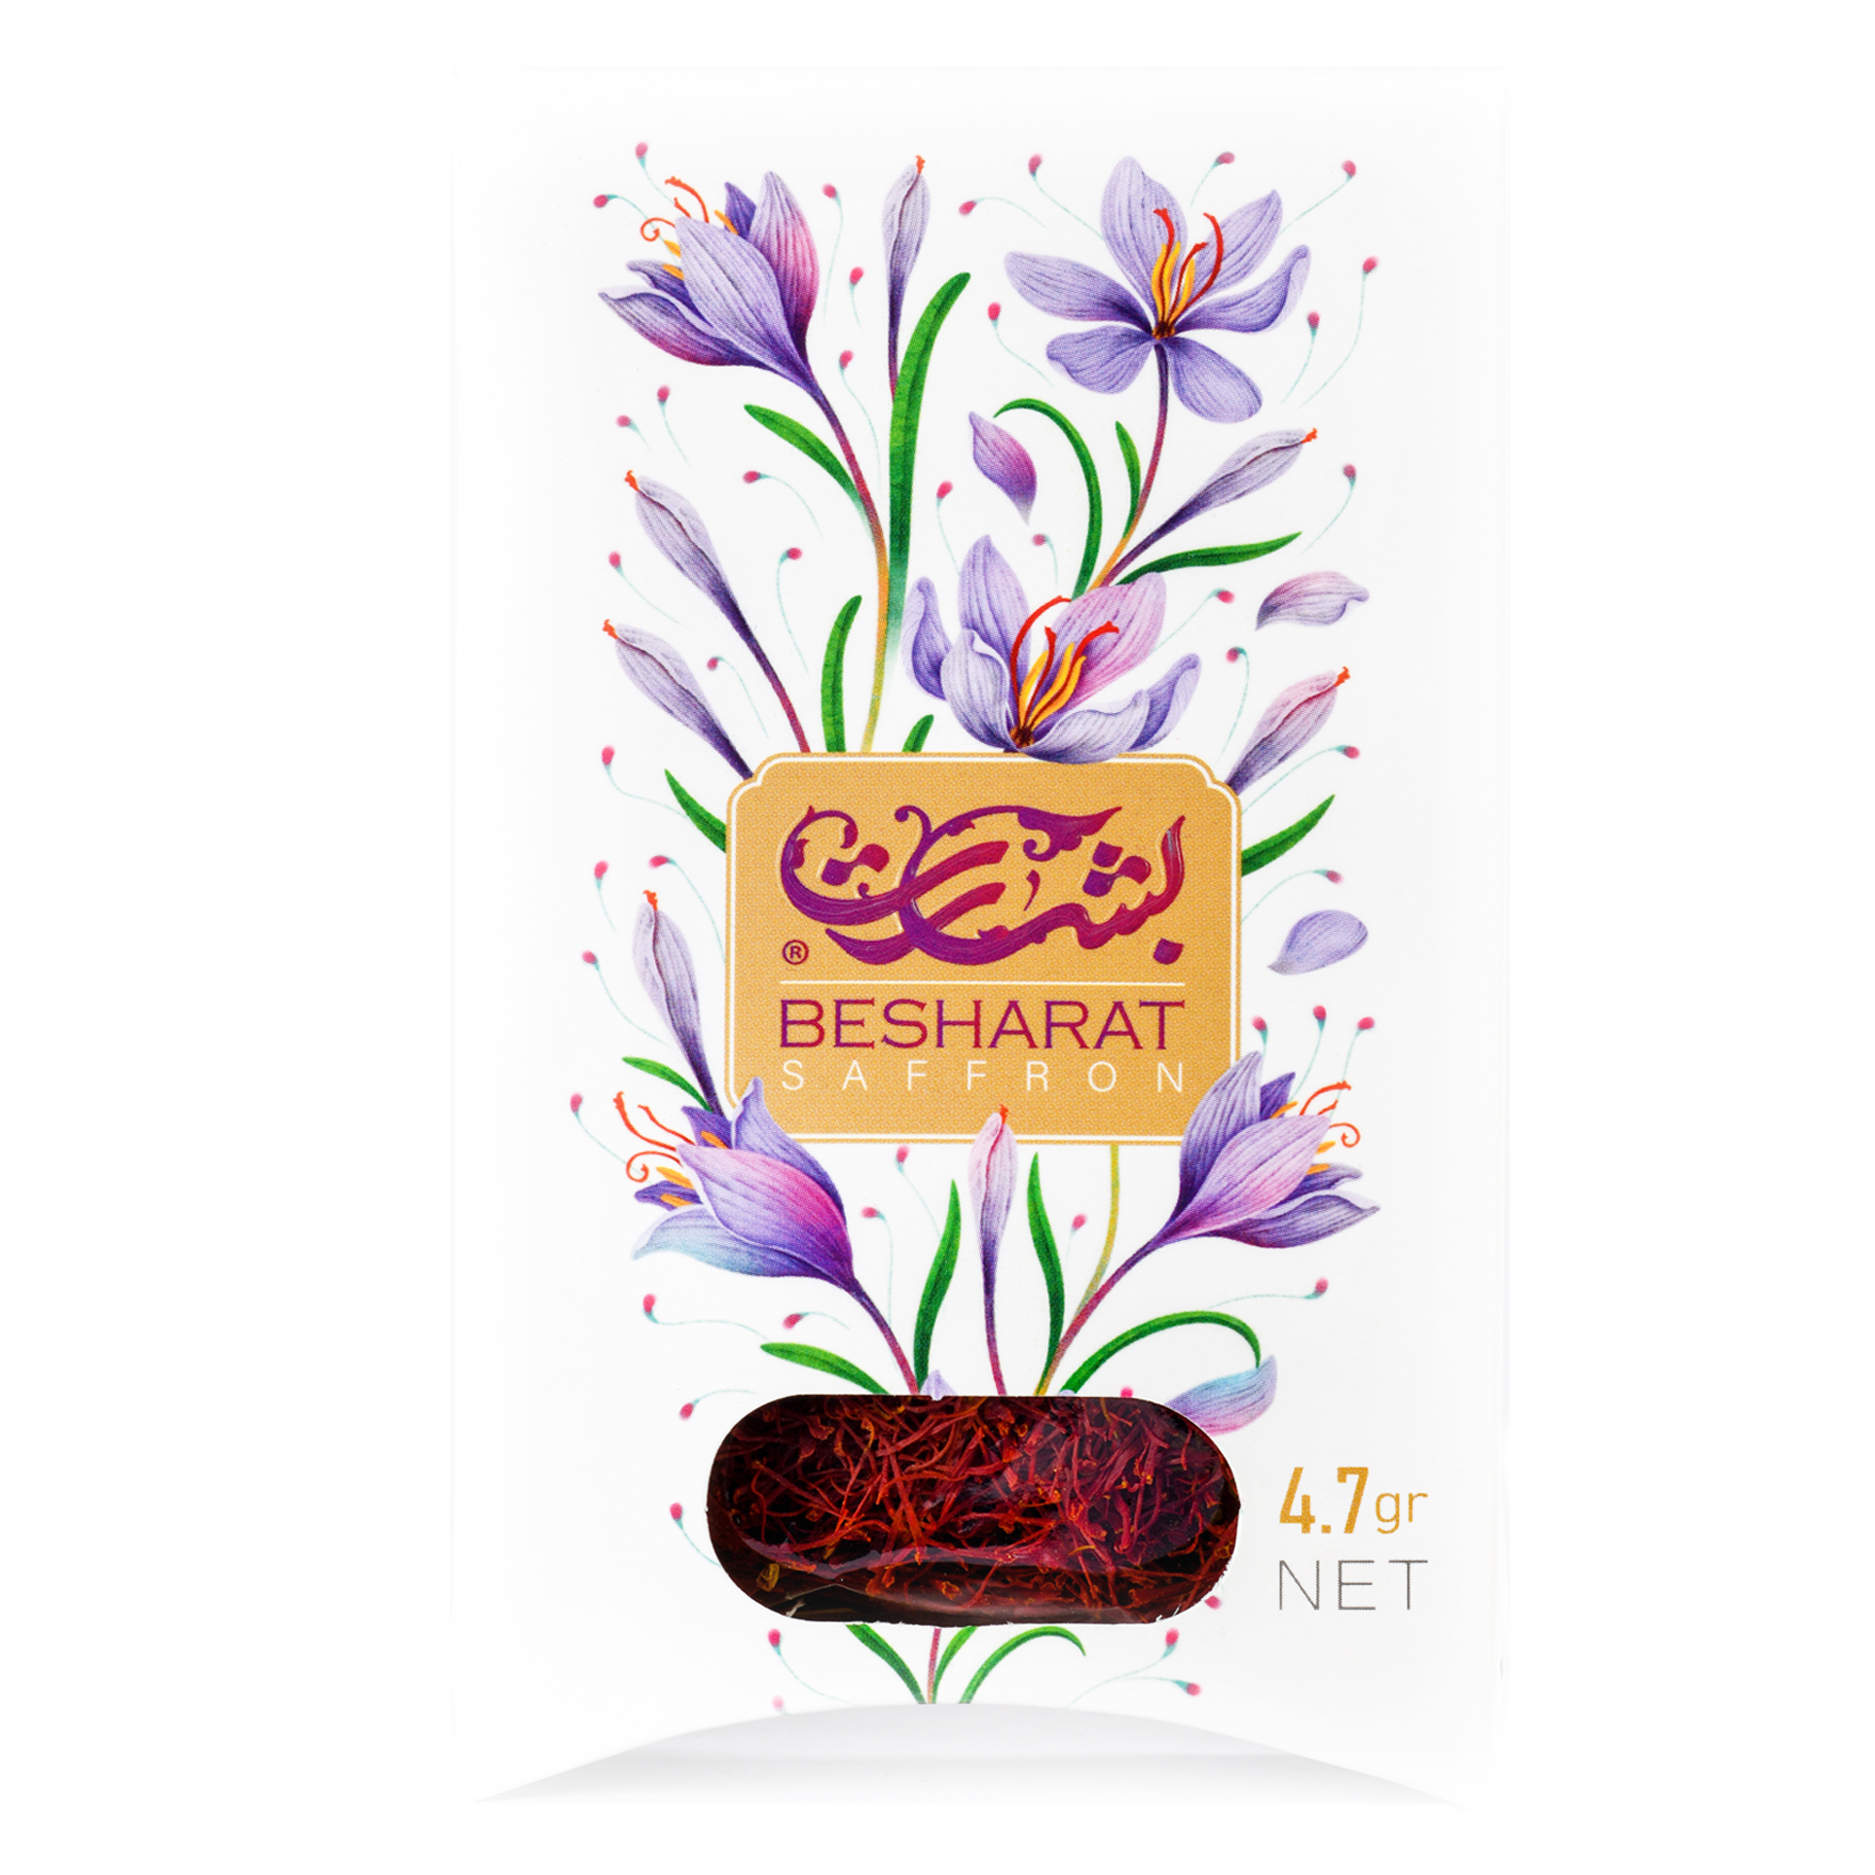 زعفران بشارت سری گل های بهشت- 4.7 گرم